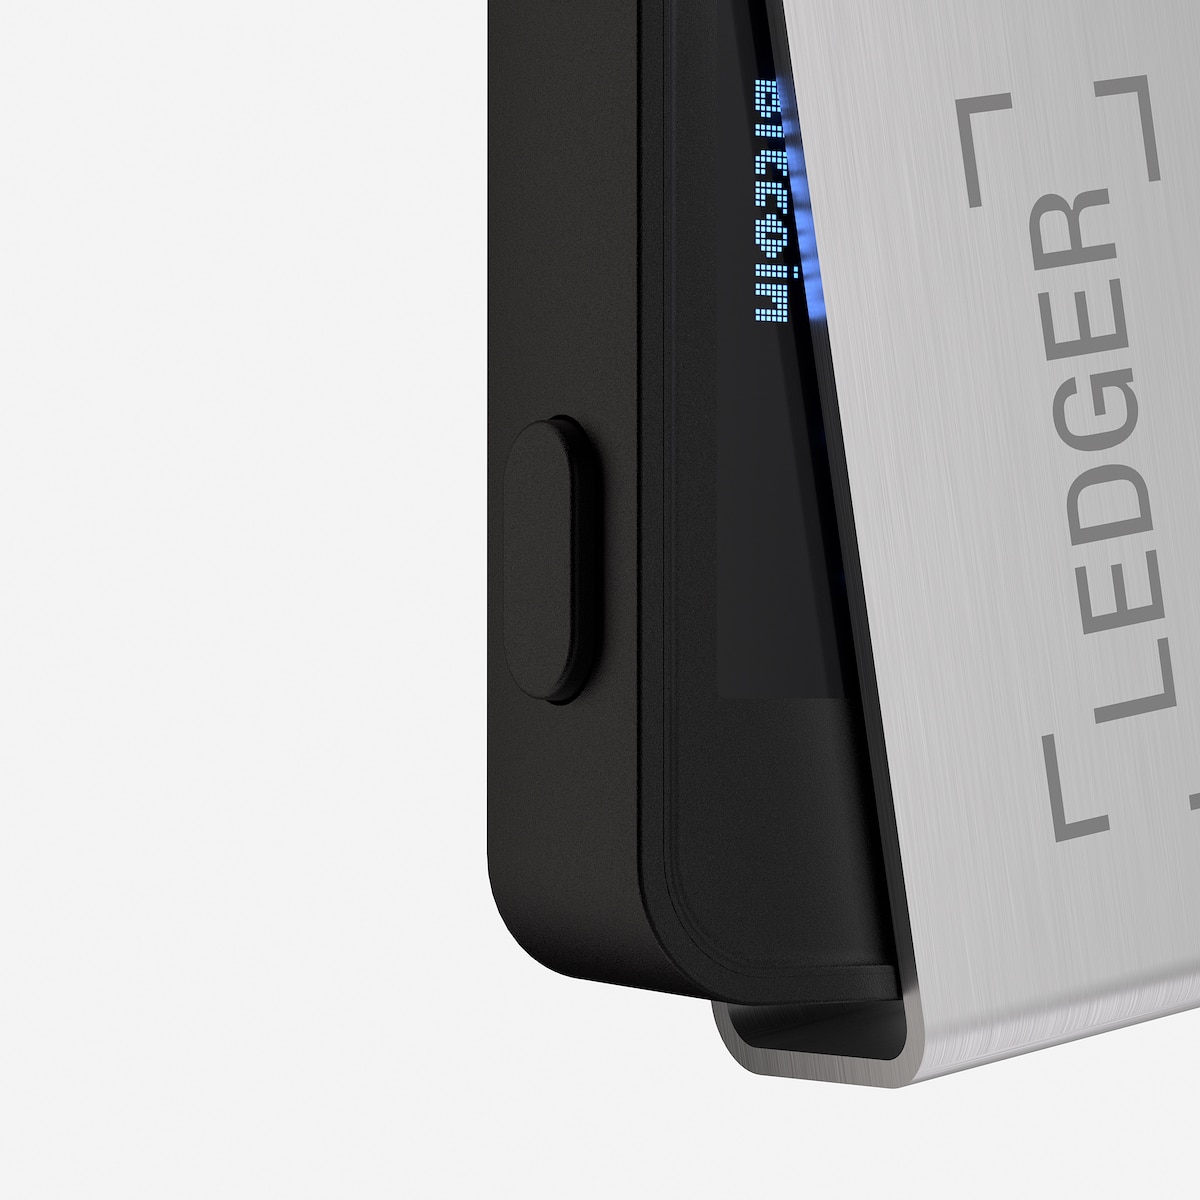 Lacroix produit les clés de sécurisation Nano de Ledger - Electroniques